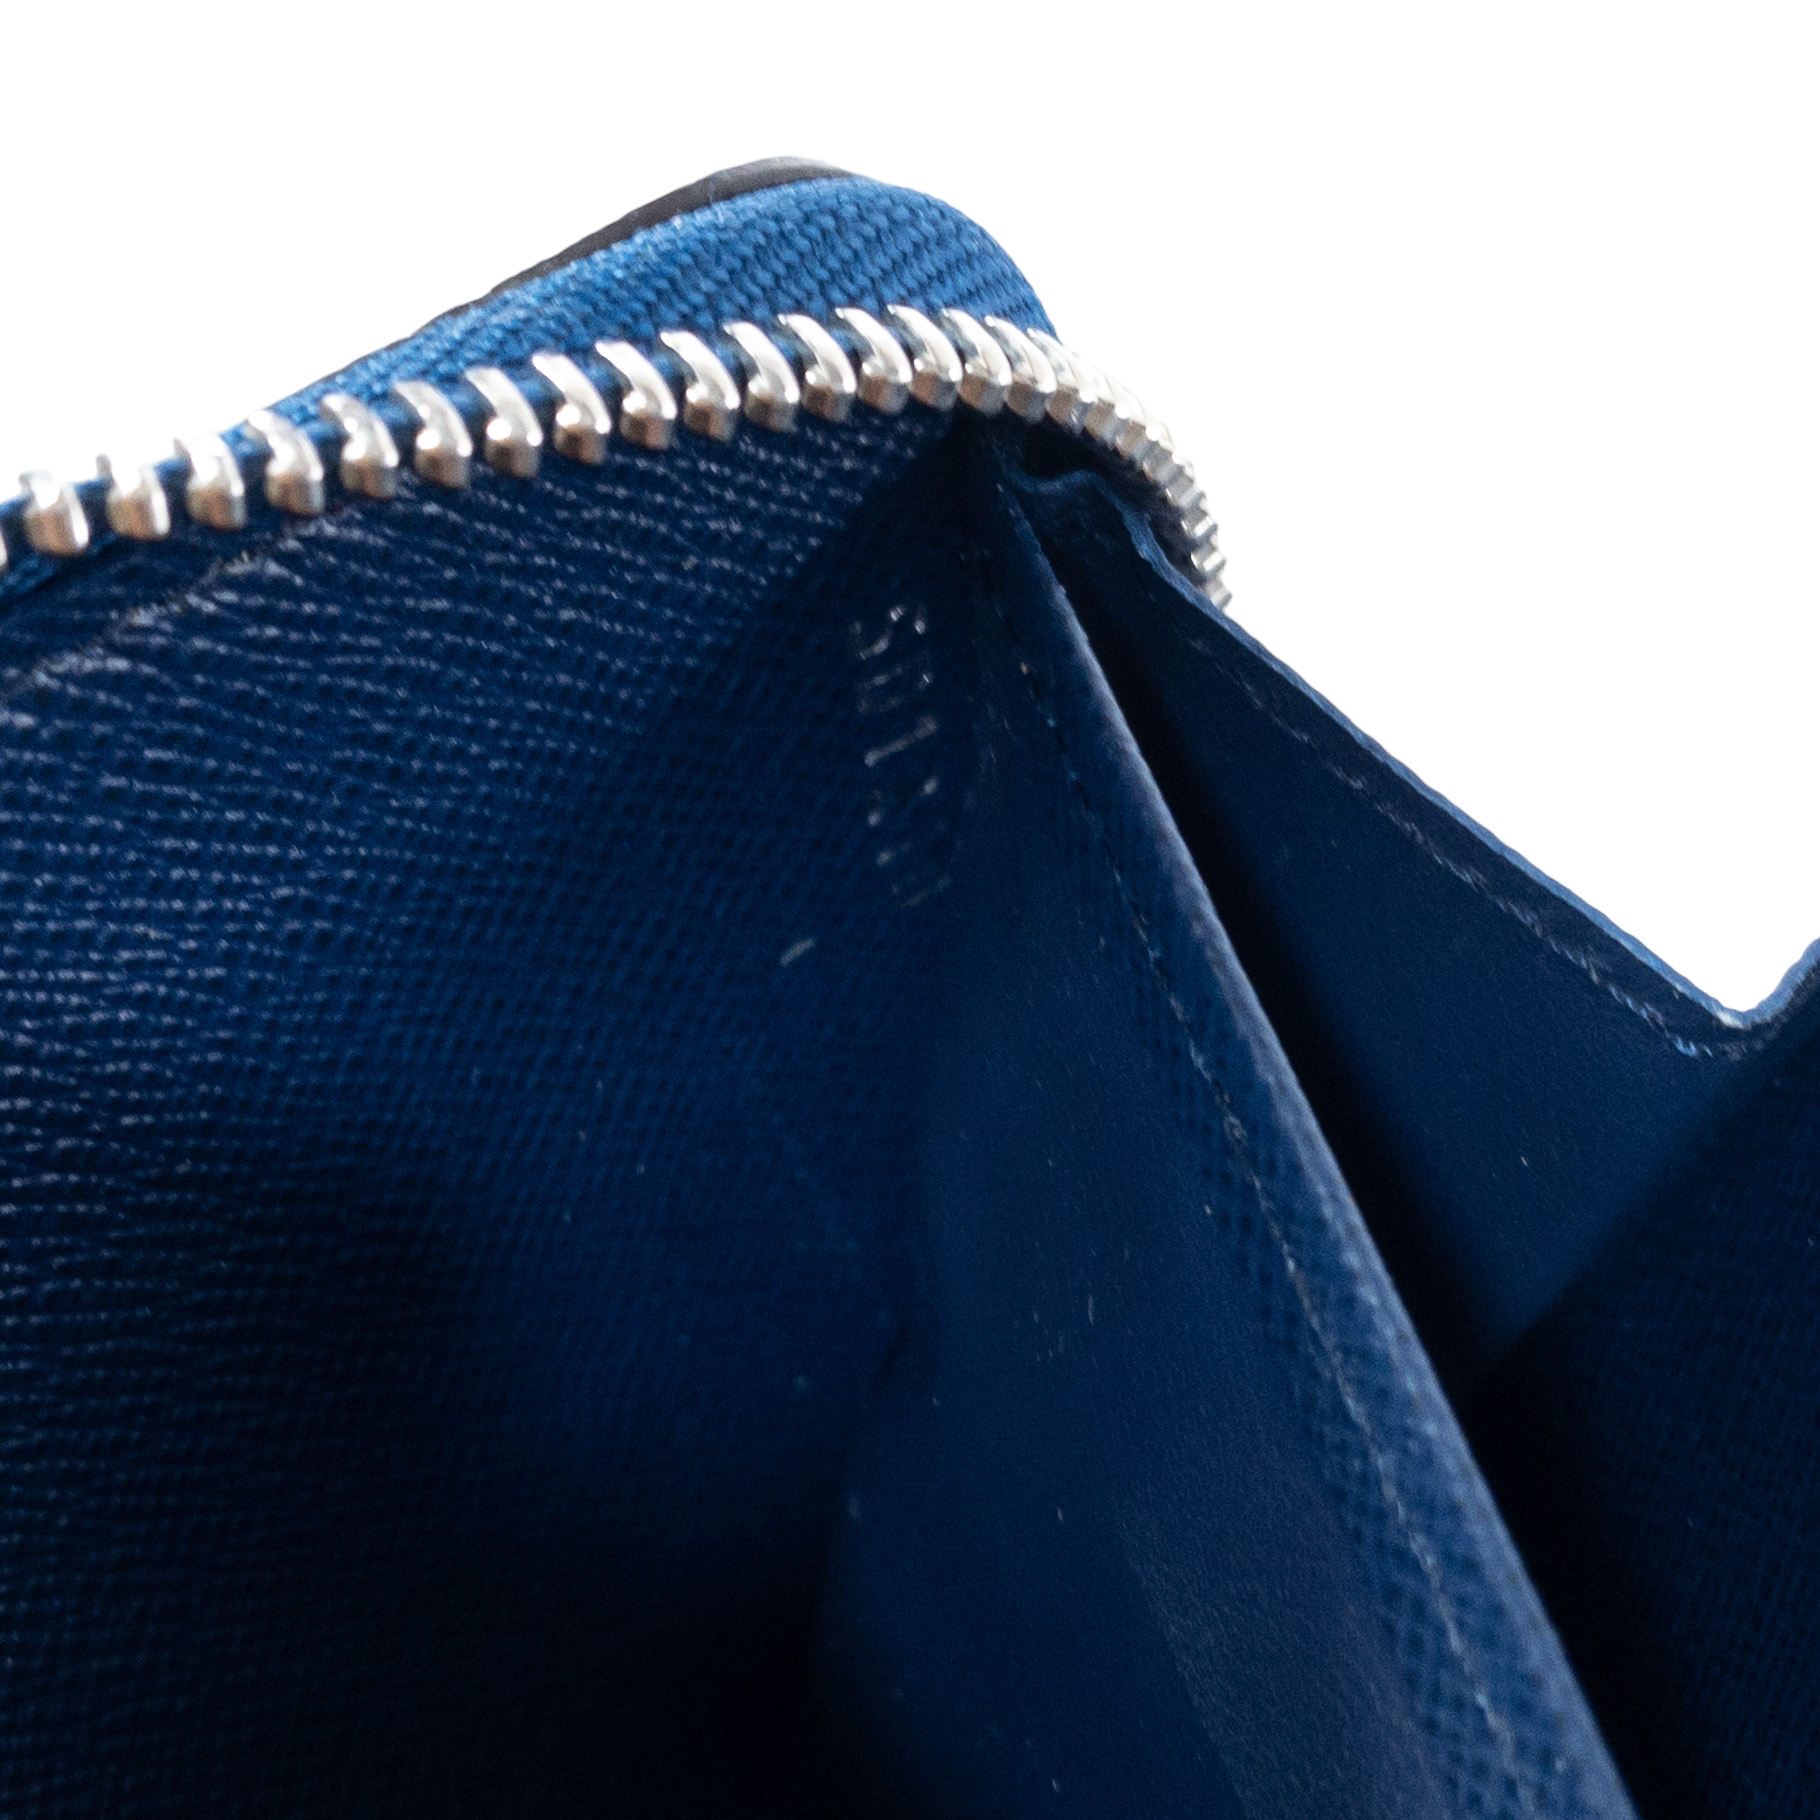 Louis Vuitton Zippy Wallet Gradient Pastel Blue